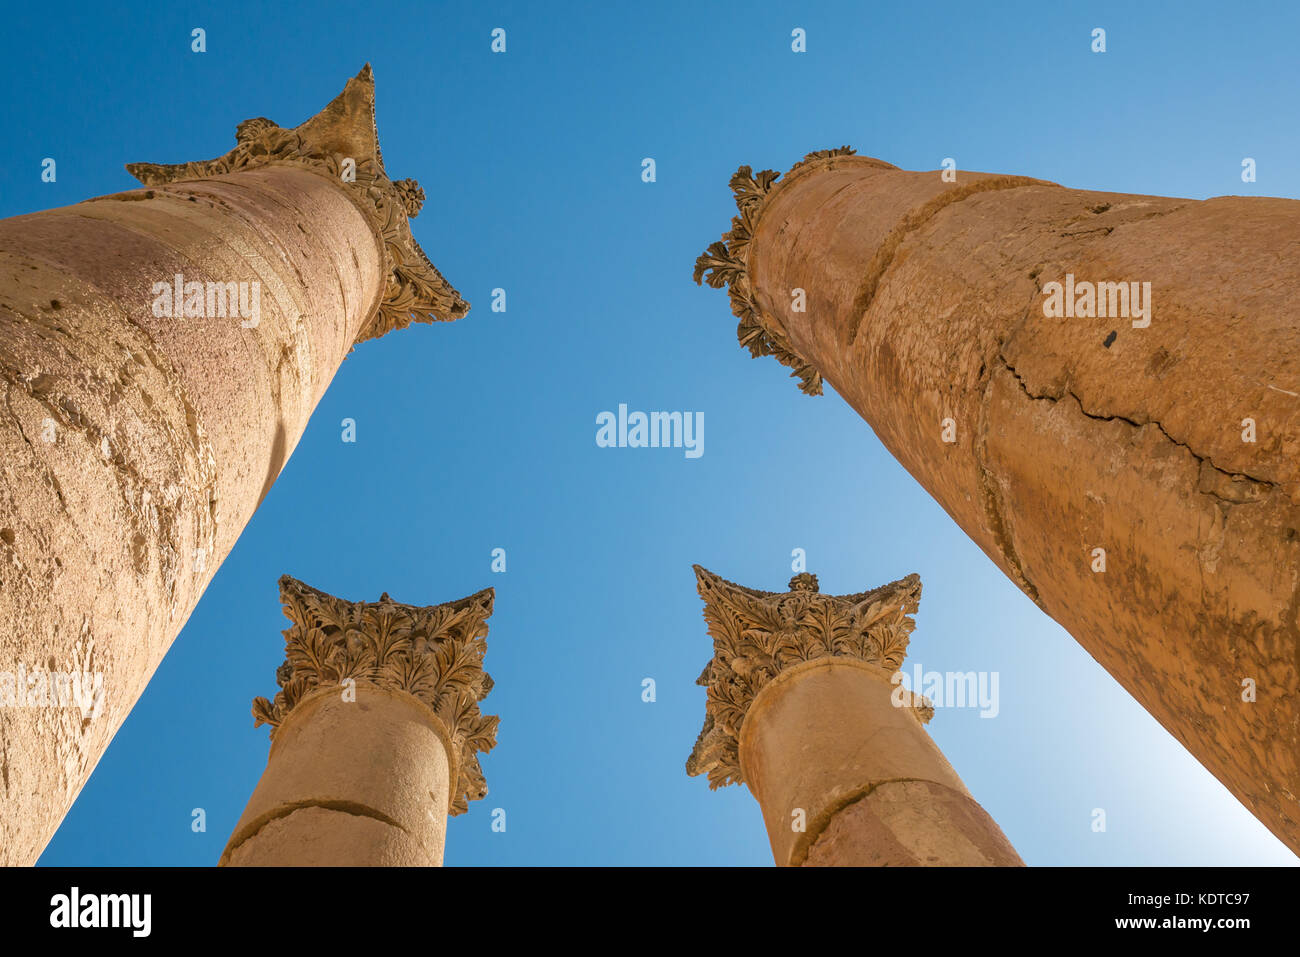 Alte colonne corinzie con foglie di acanto decorazioni scolpite, città romana di Jerash, antica Gerasa, sito archeologico, Giordania, Medio Oriente Foto Stock